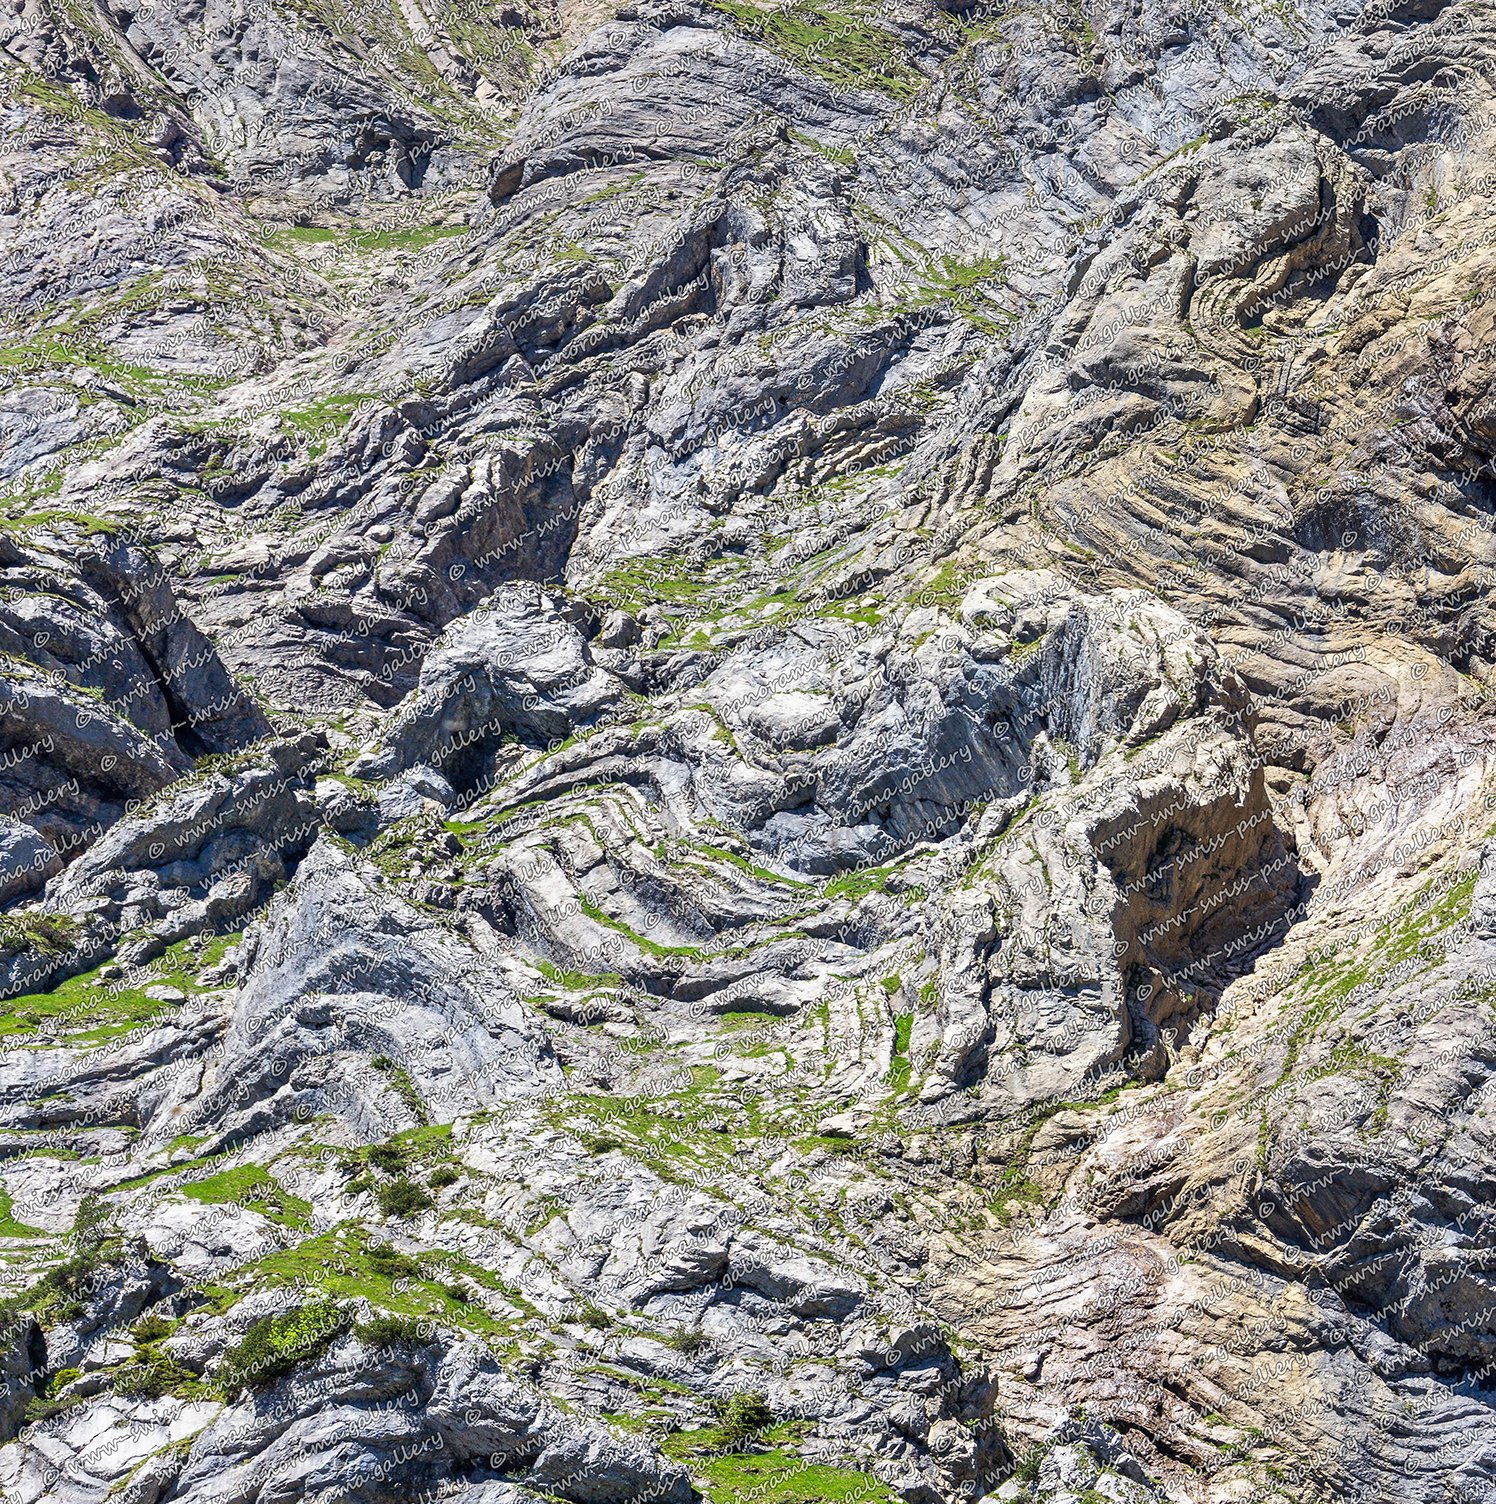 Bergpanorama Südwand des Gitschen mit beeindruckenden Gebirgsfaltungen